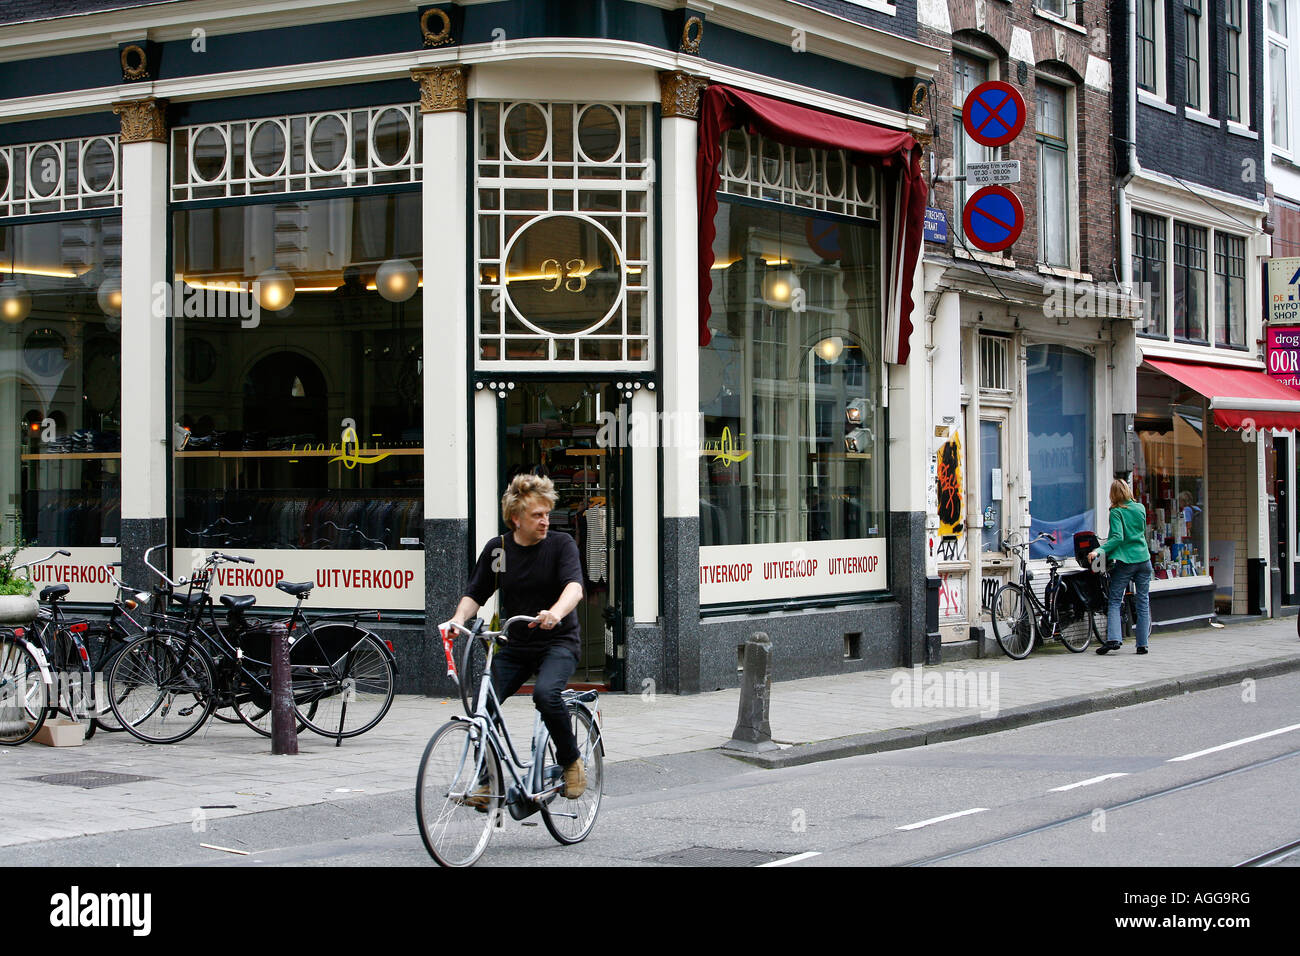 Utrechtsestraat une rue avec des boutiques et cafés Amsterdam Pays-Bas Banque D'Images